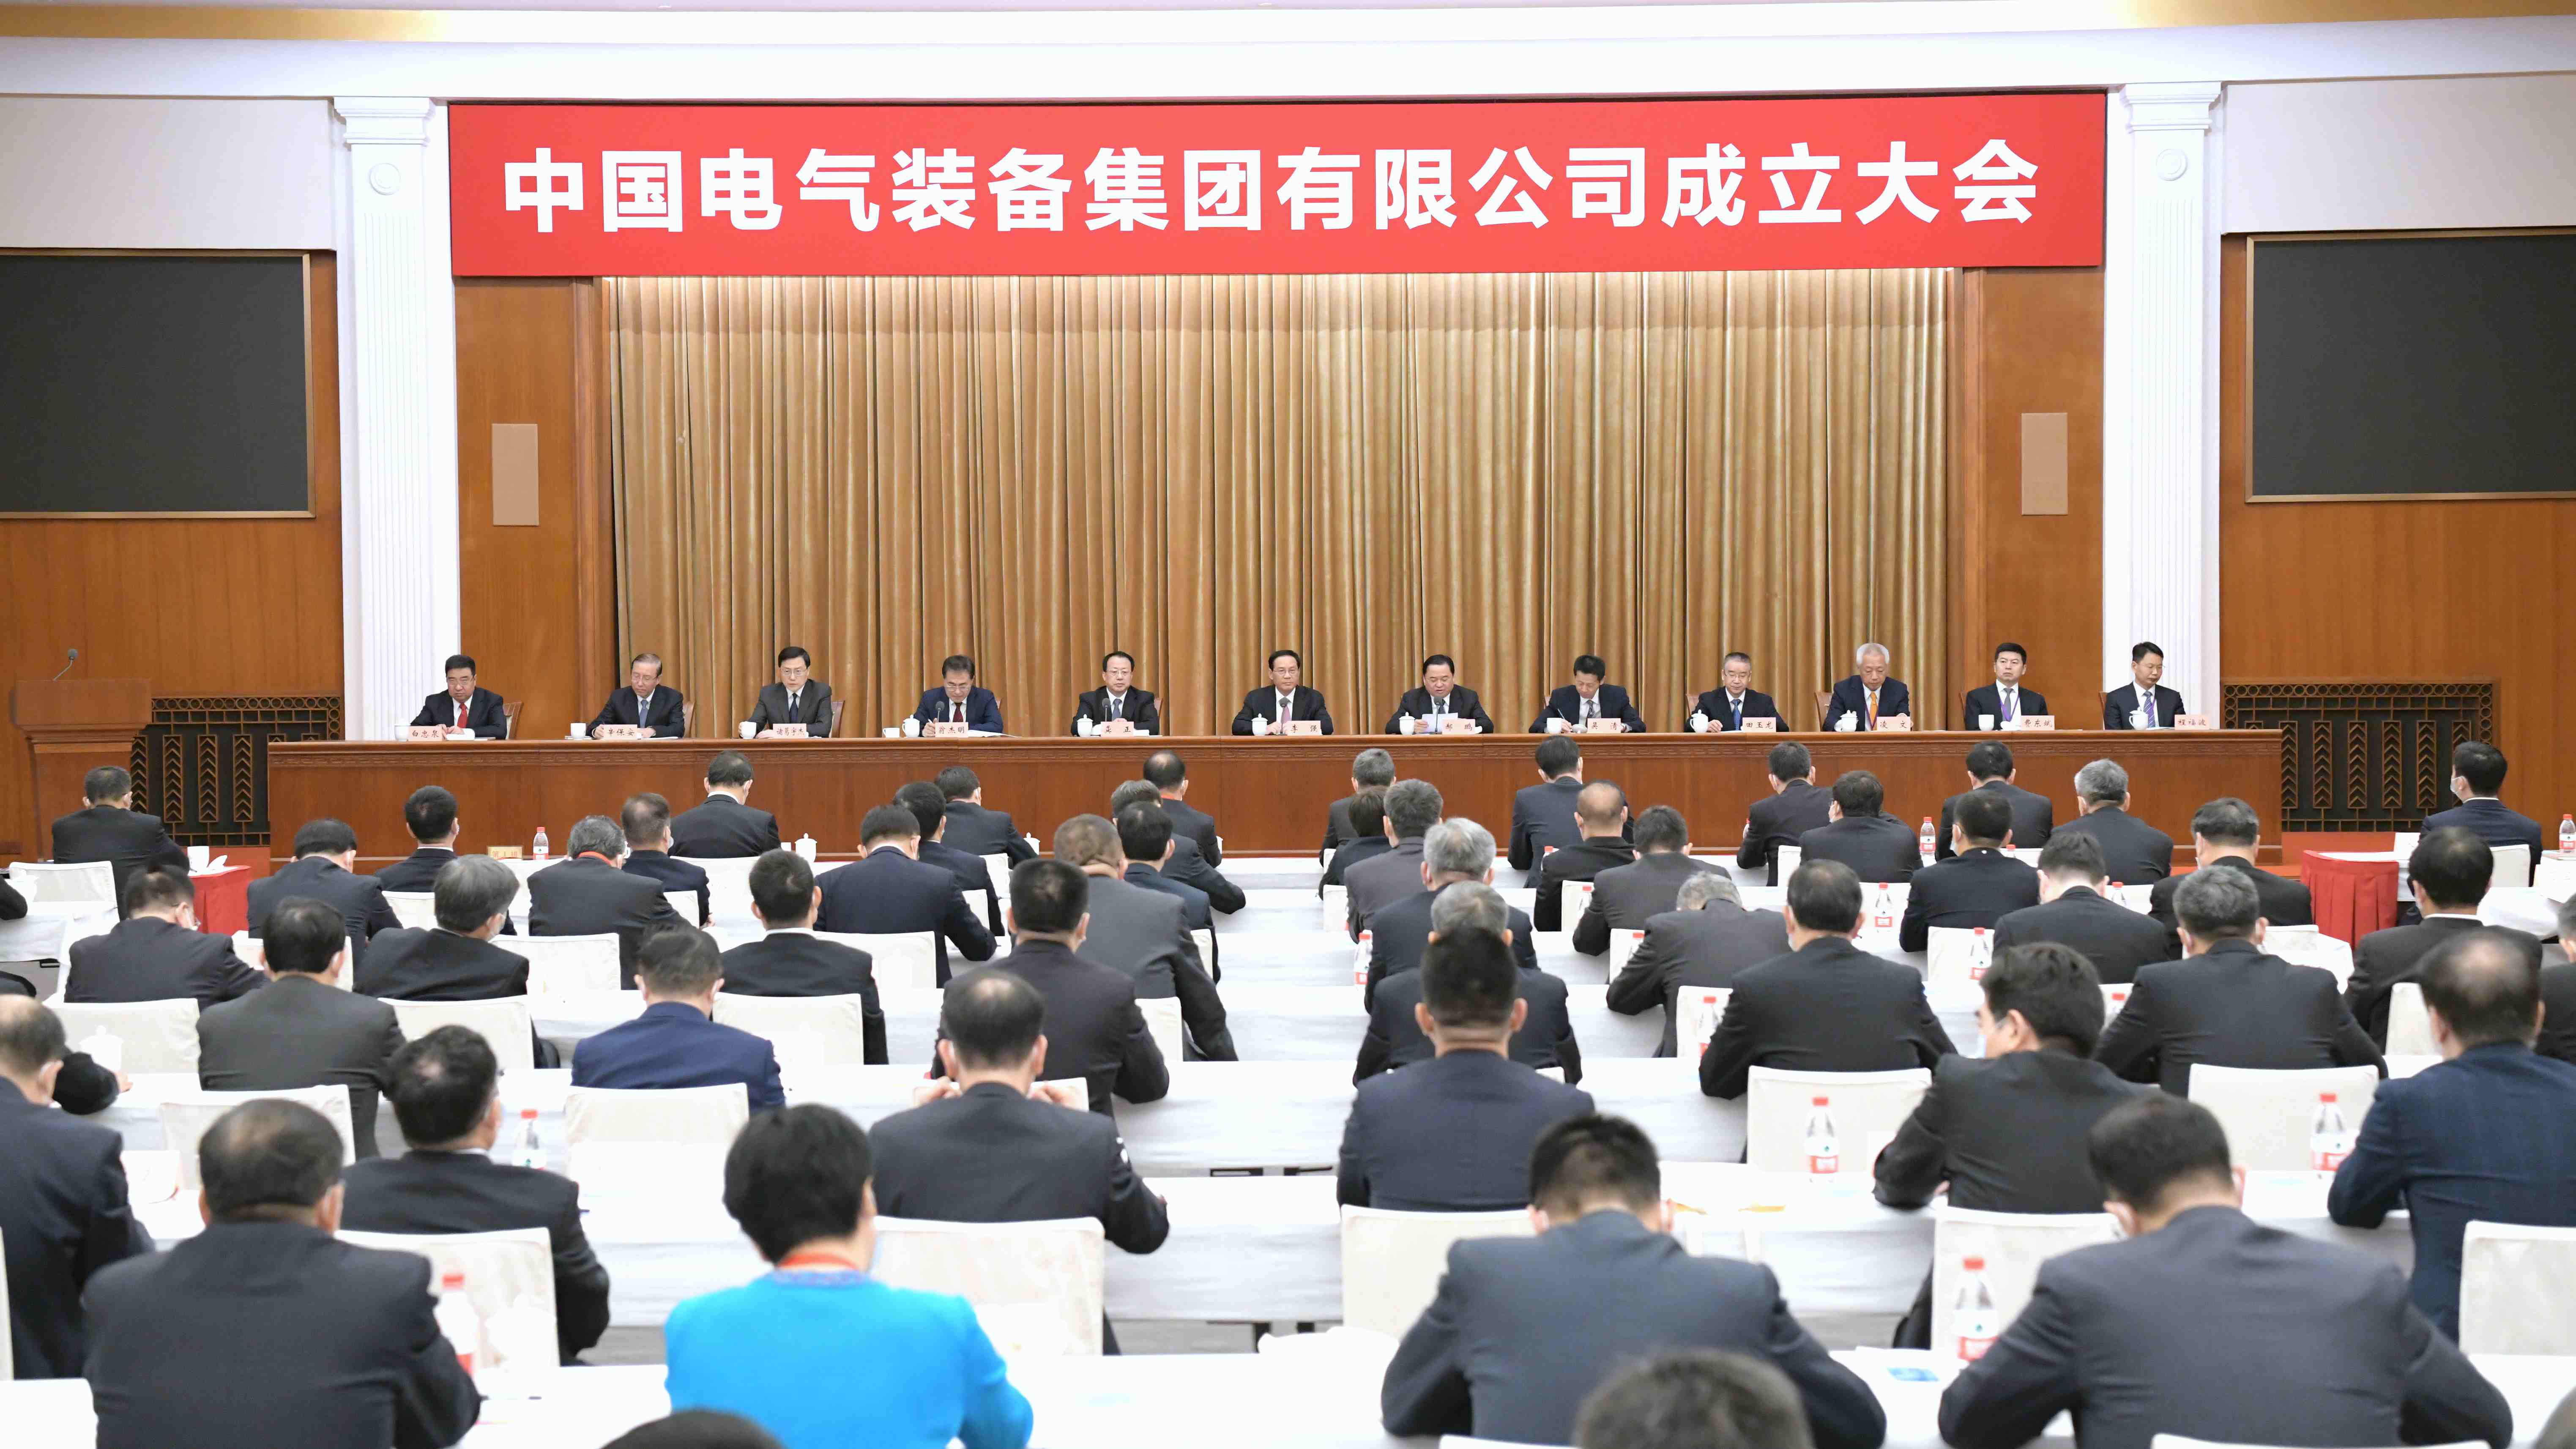 中国电气装备集团有限公司成立大会在沪举行